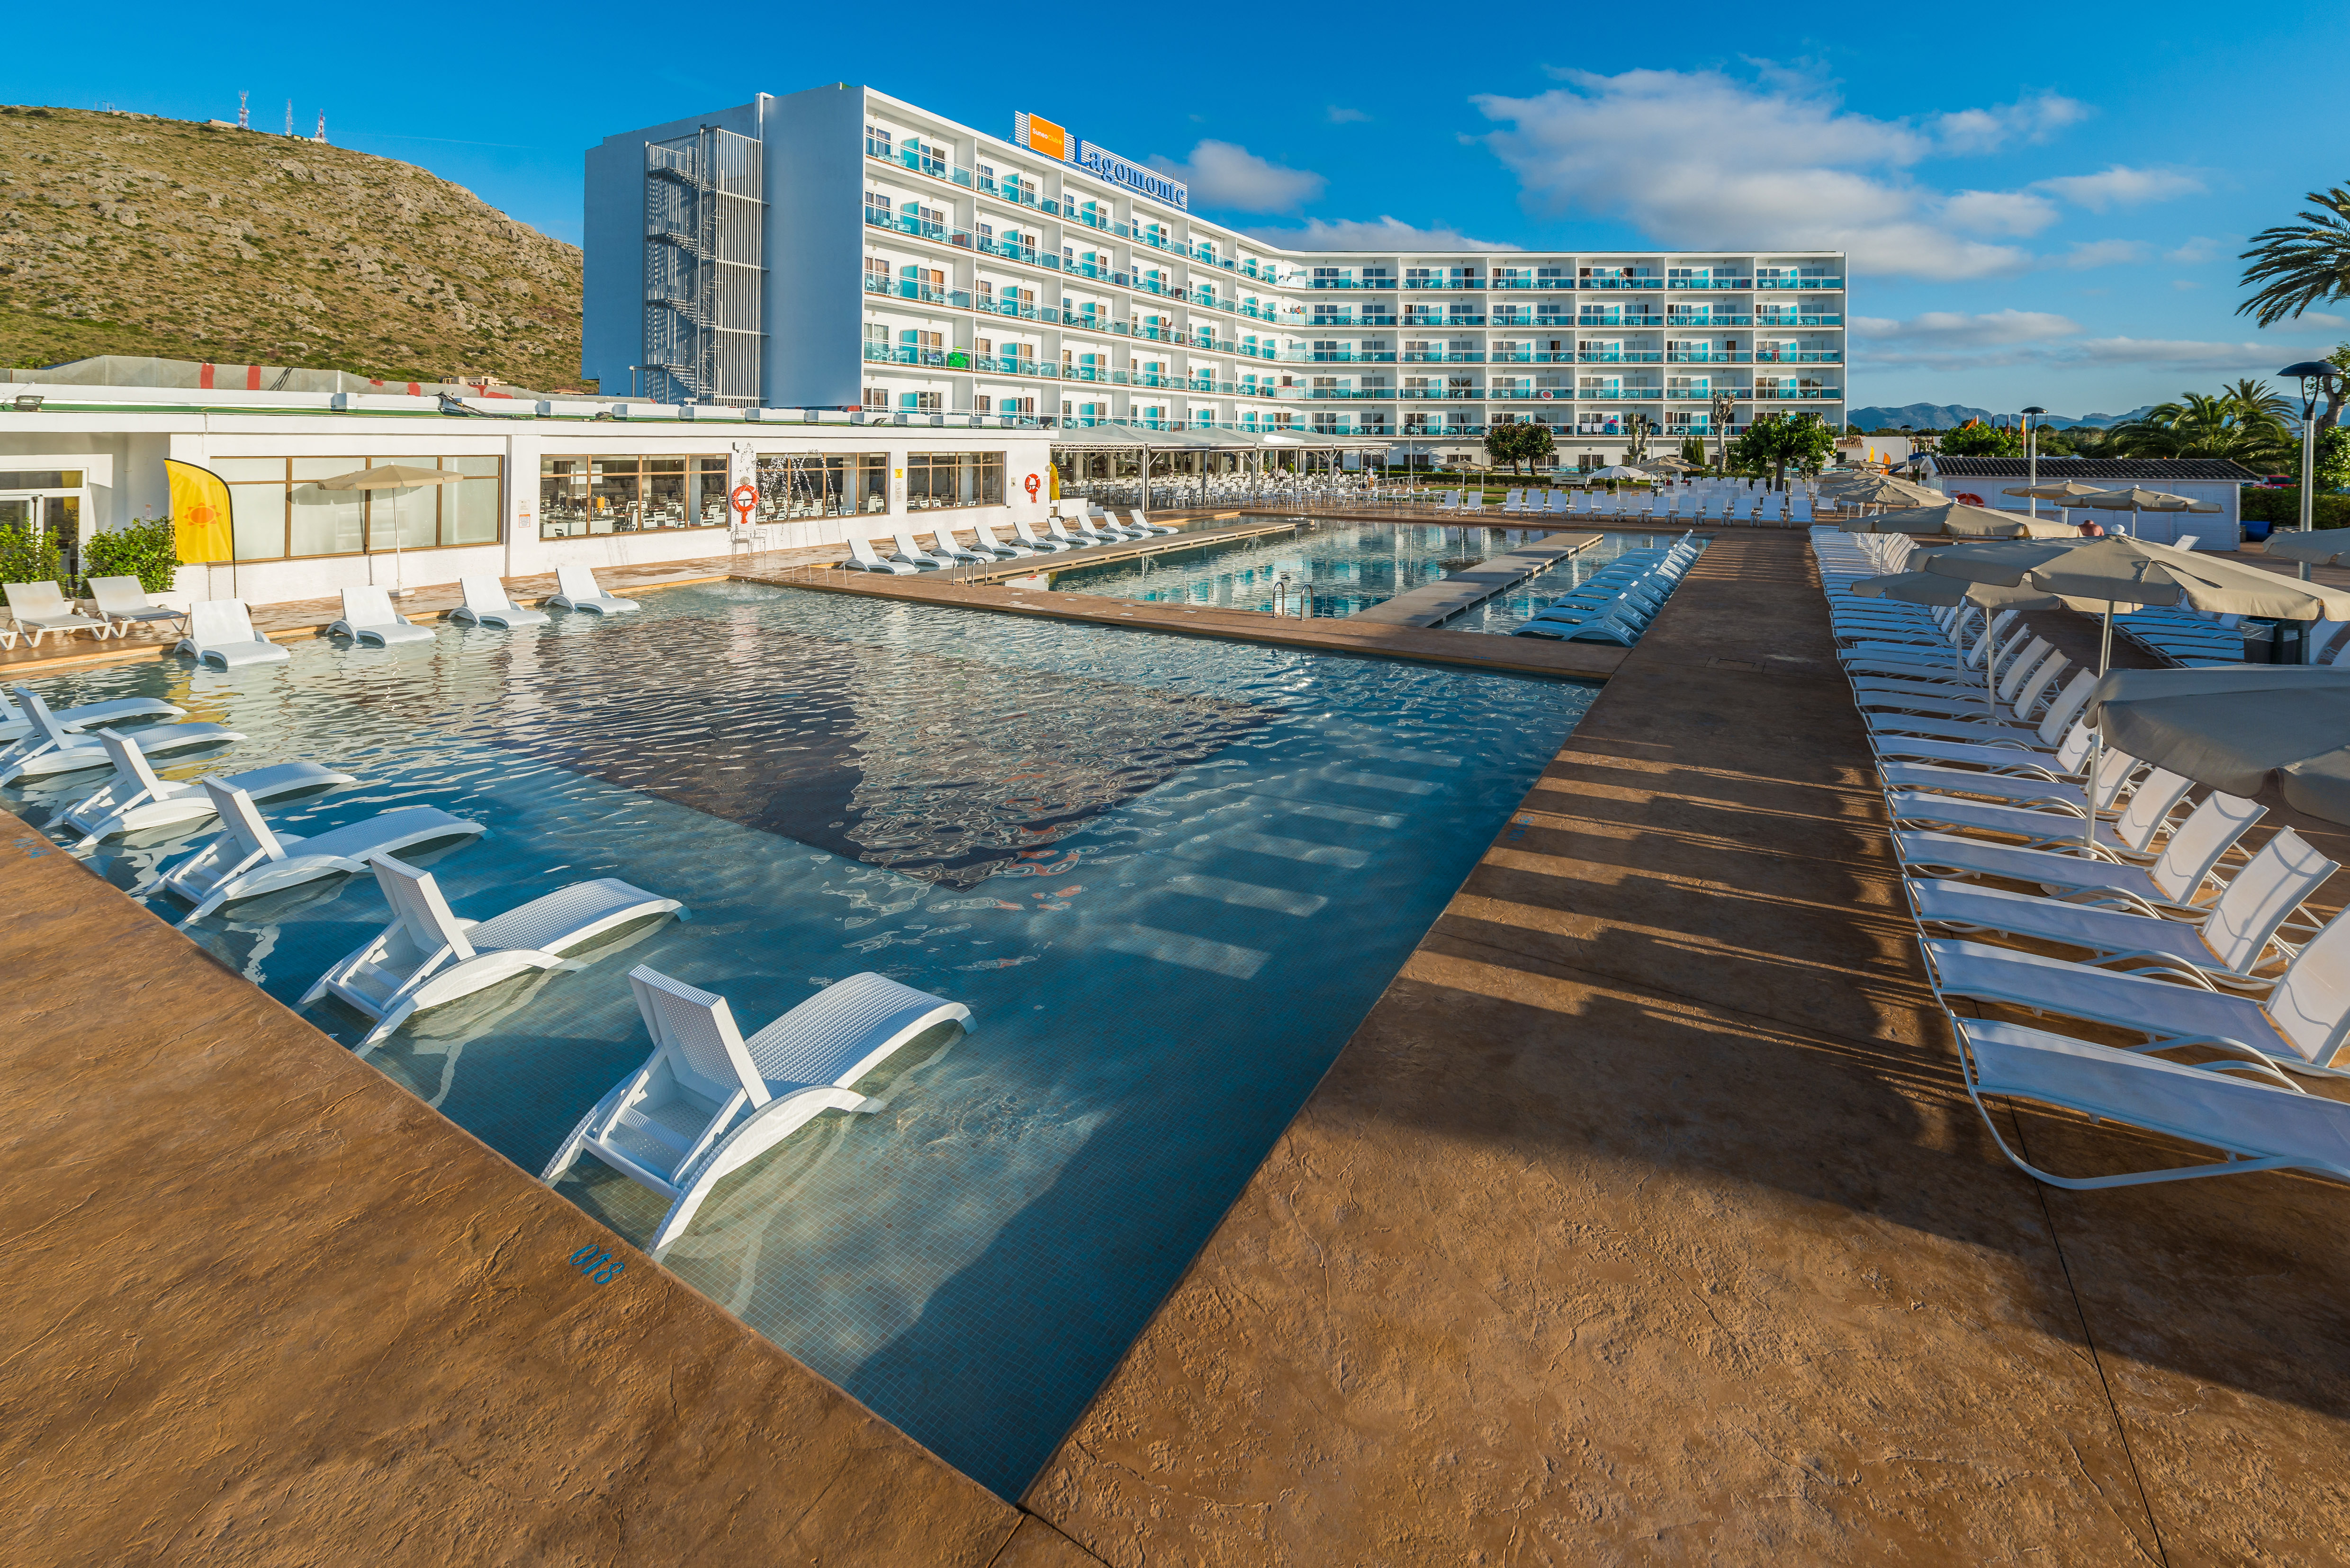 BlueBay Hotels registró en Baleares una ocupación media del 95% durante el pasado agosto